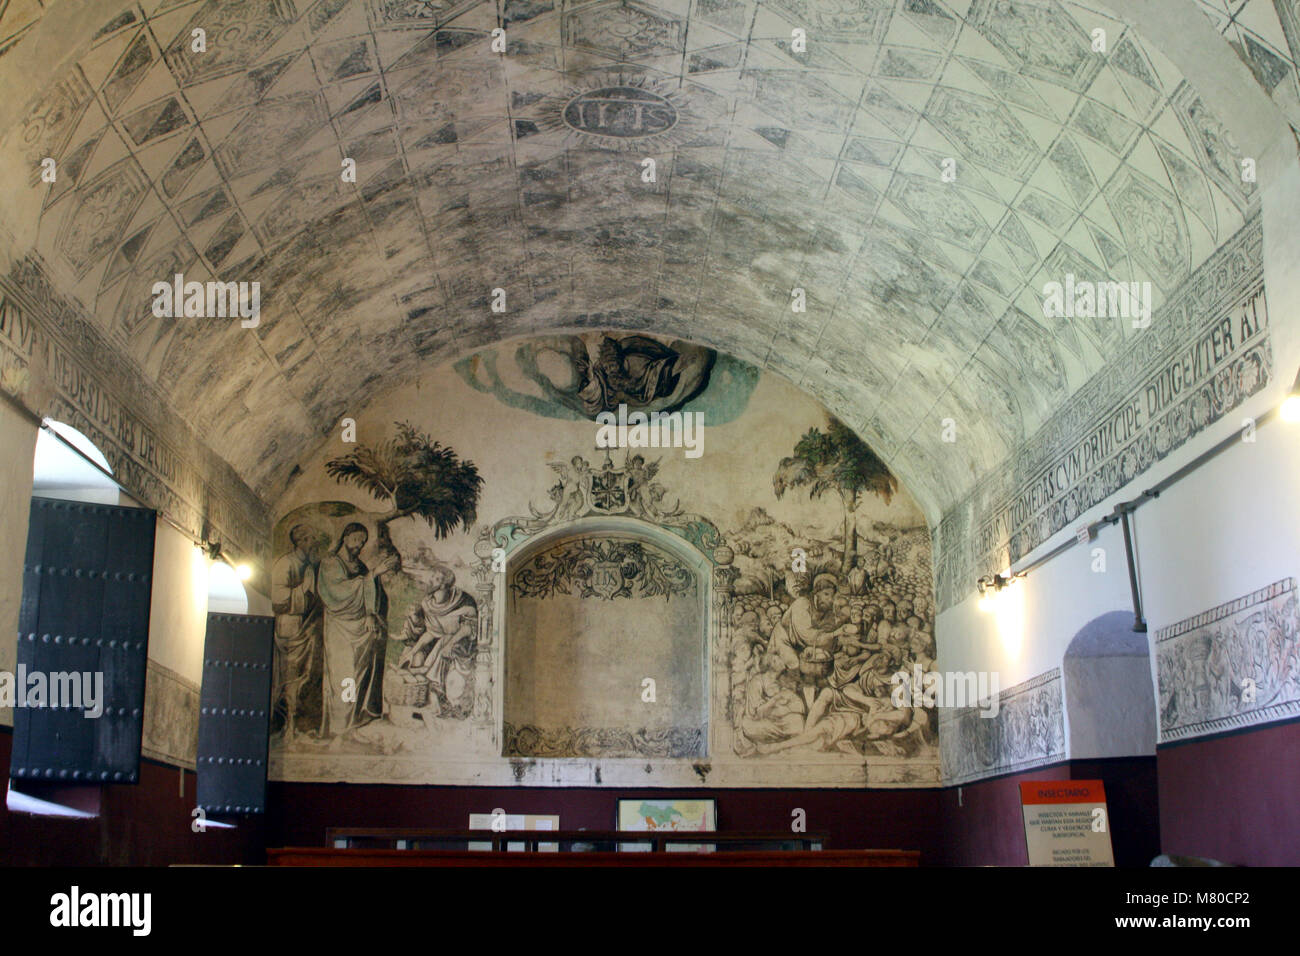 Plafond voûte peinte et fresque avec scène religieuse. Ancien couvent de Saint-Domingue, Oaxtepec, Mexique Banque D'Images